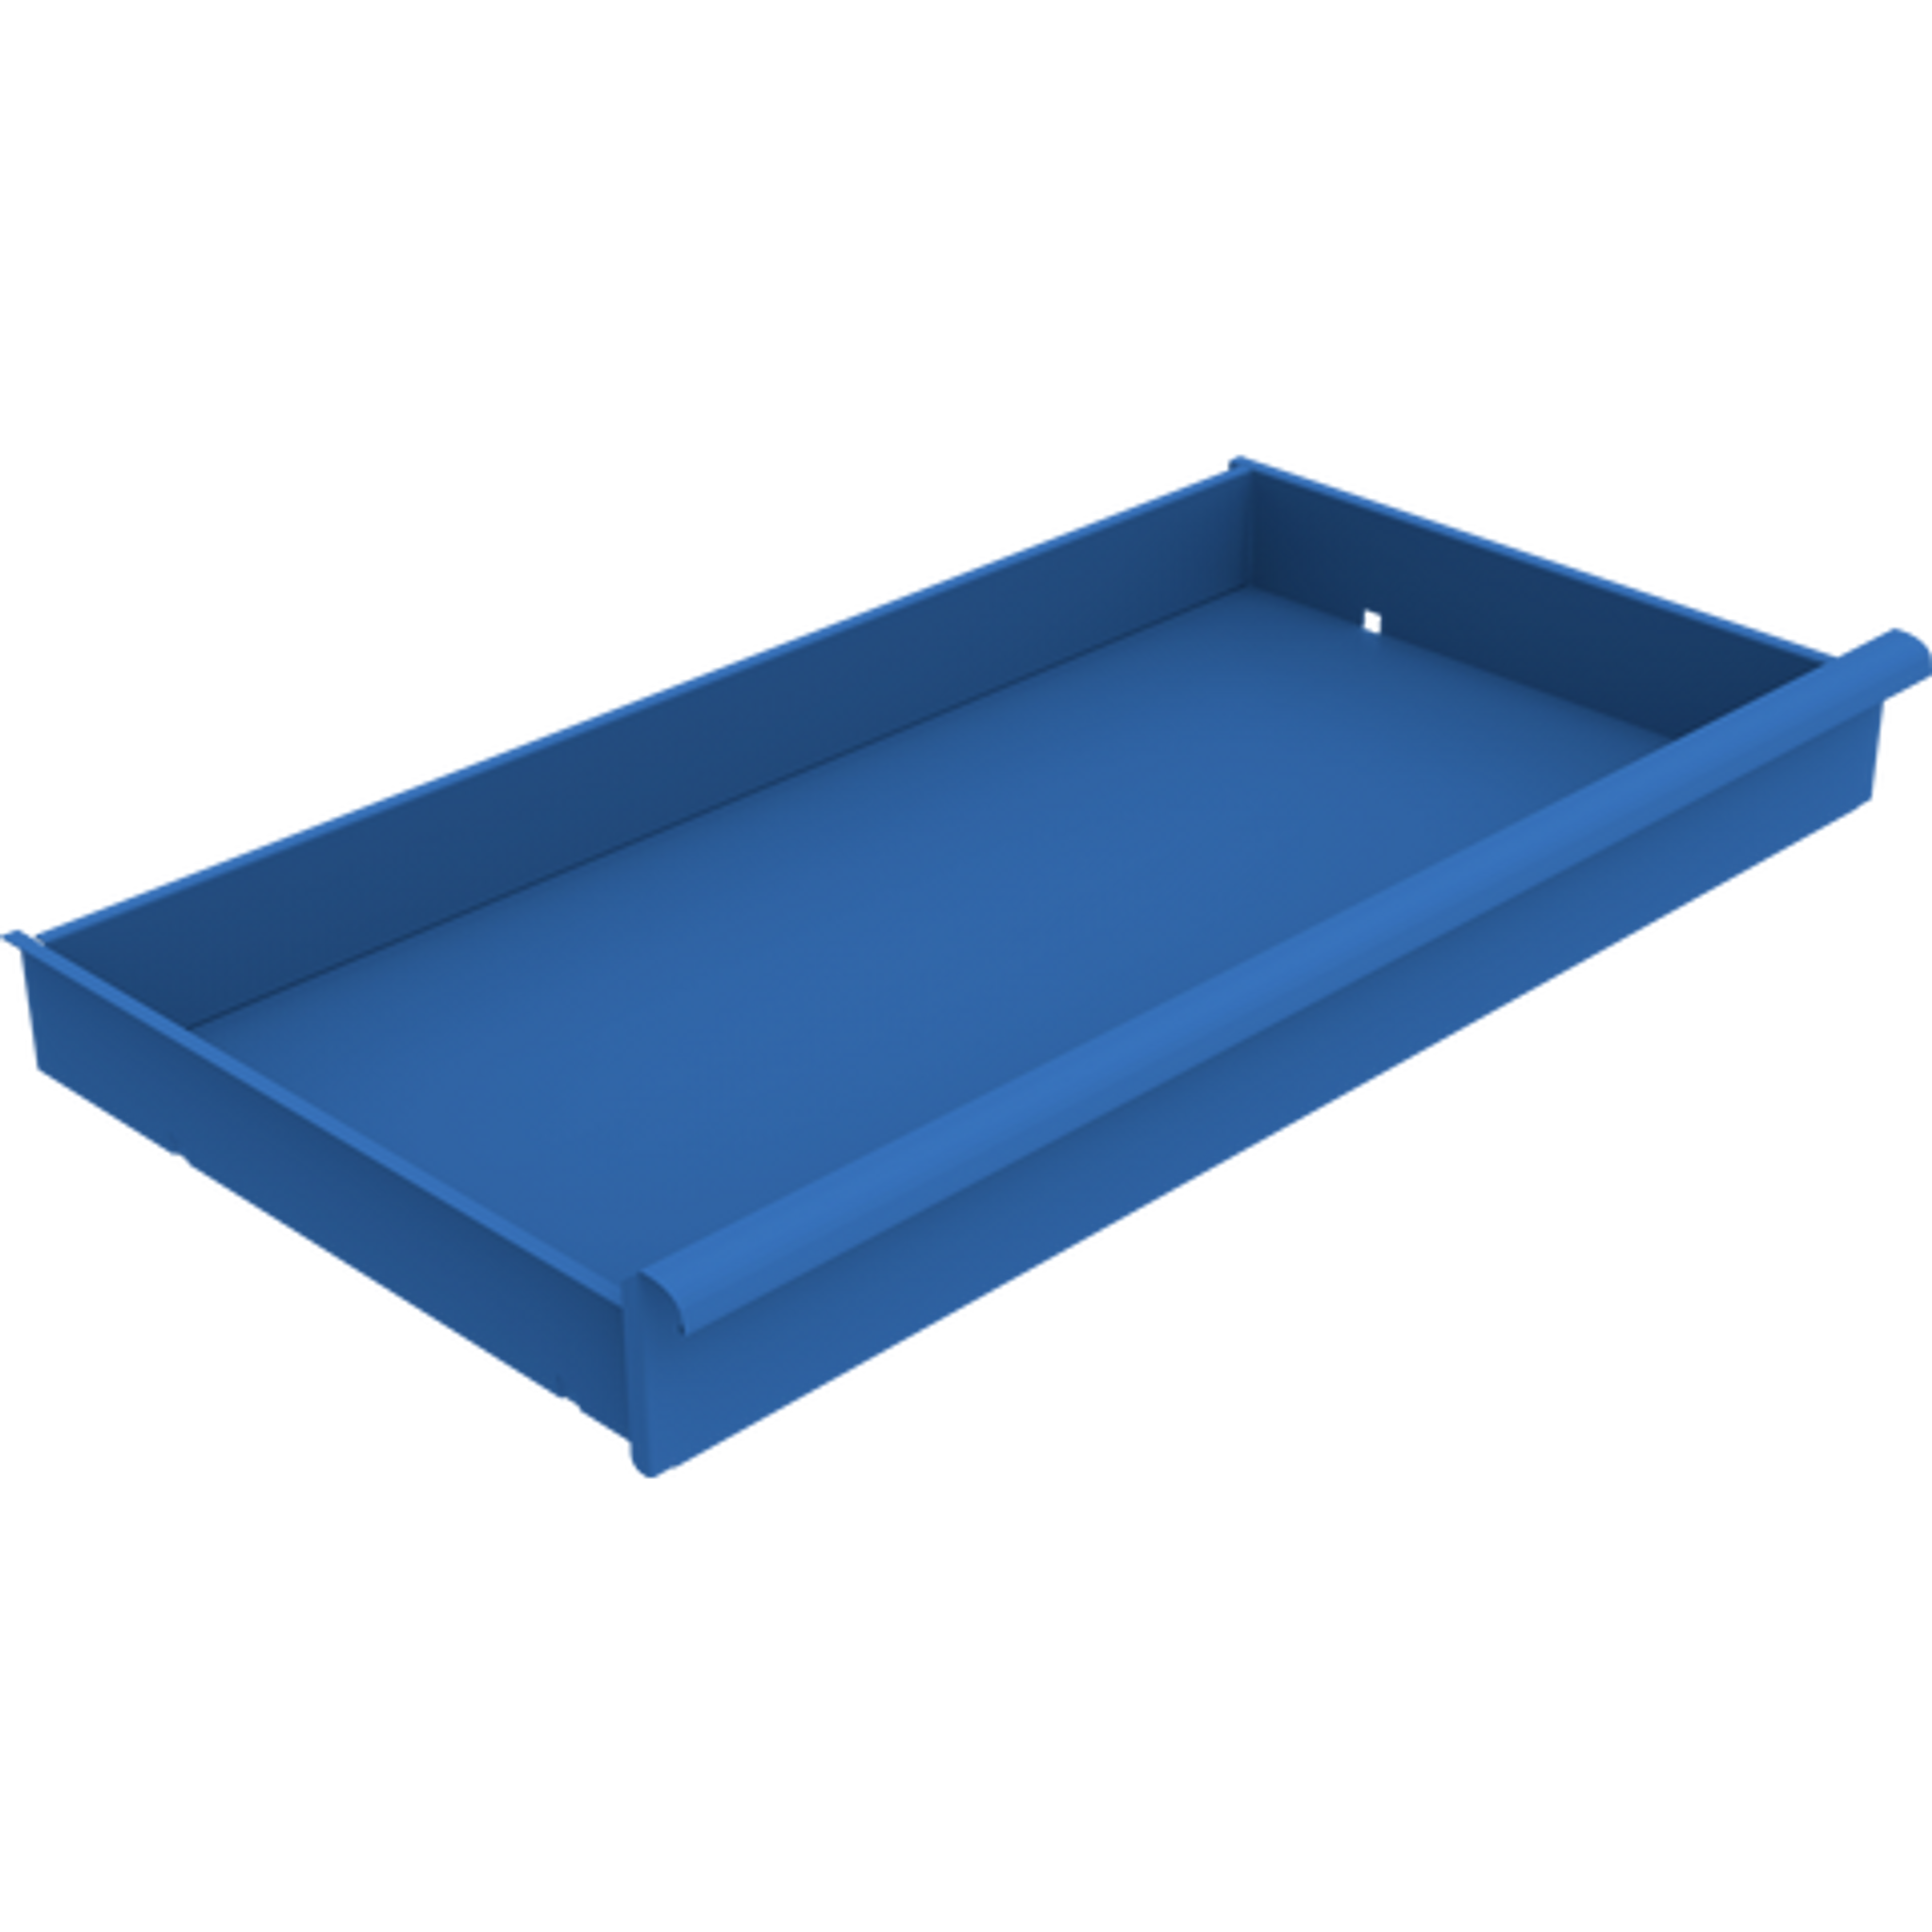 Dodatkowa szuflada do szaf warsztatowych KOVOS, 950 x 500 mm